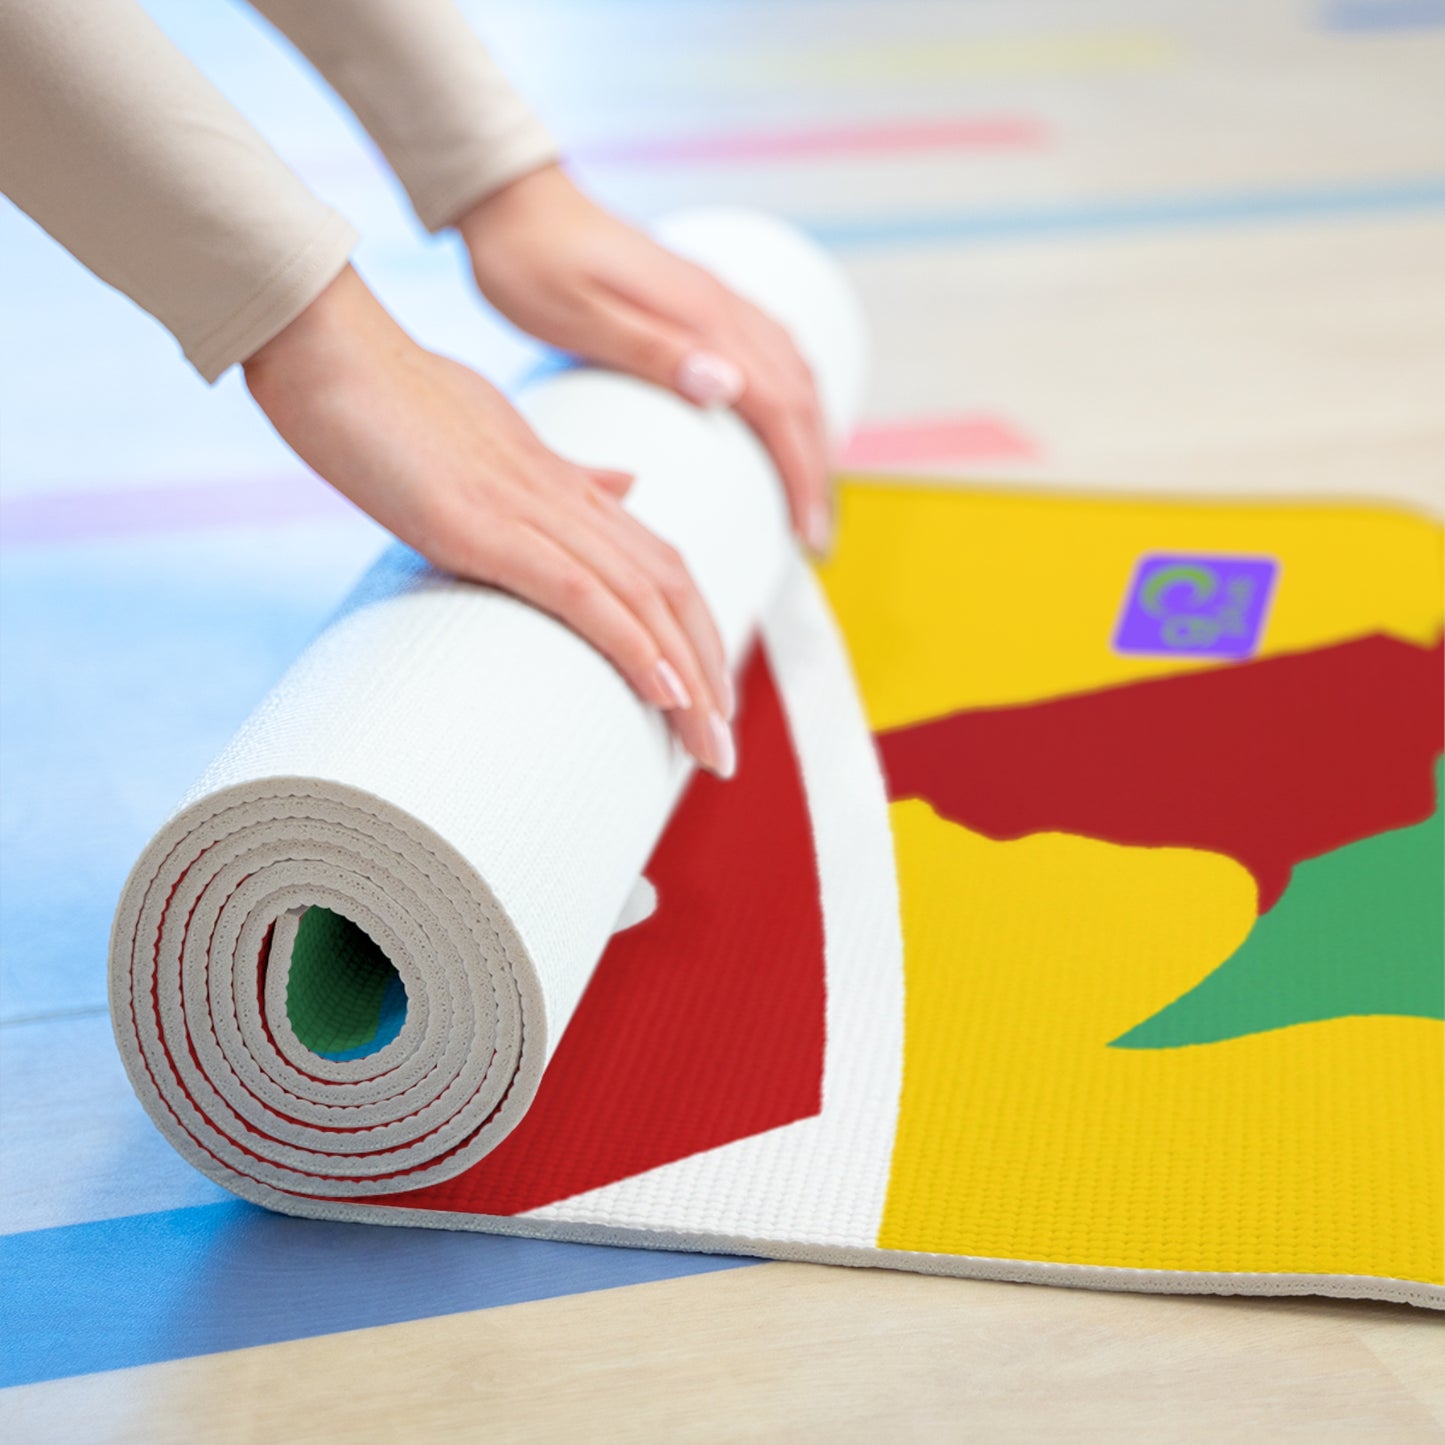 "Show Your True Colors: an Artpiece Celebrating Sports Teams" - Go Plus Foam Yoga Mat